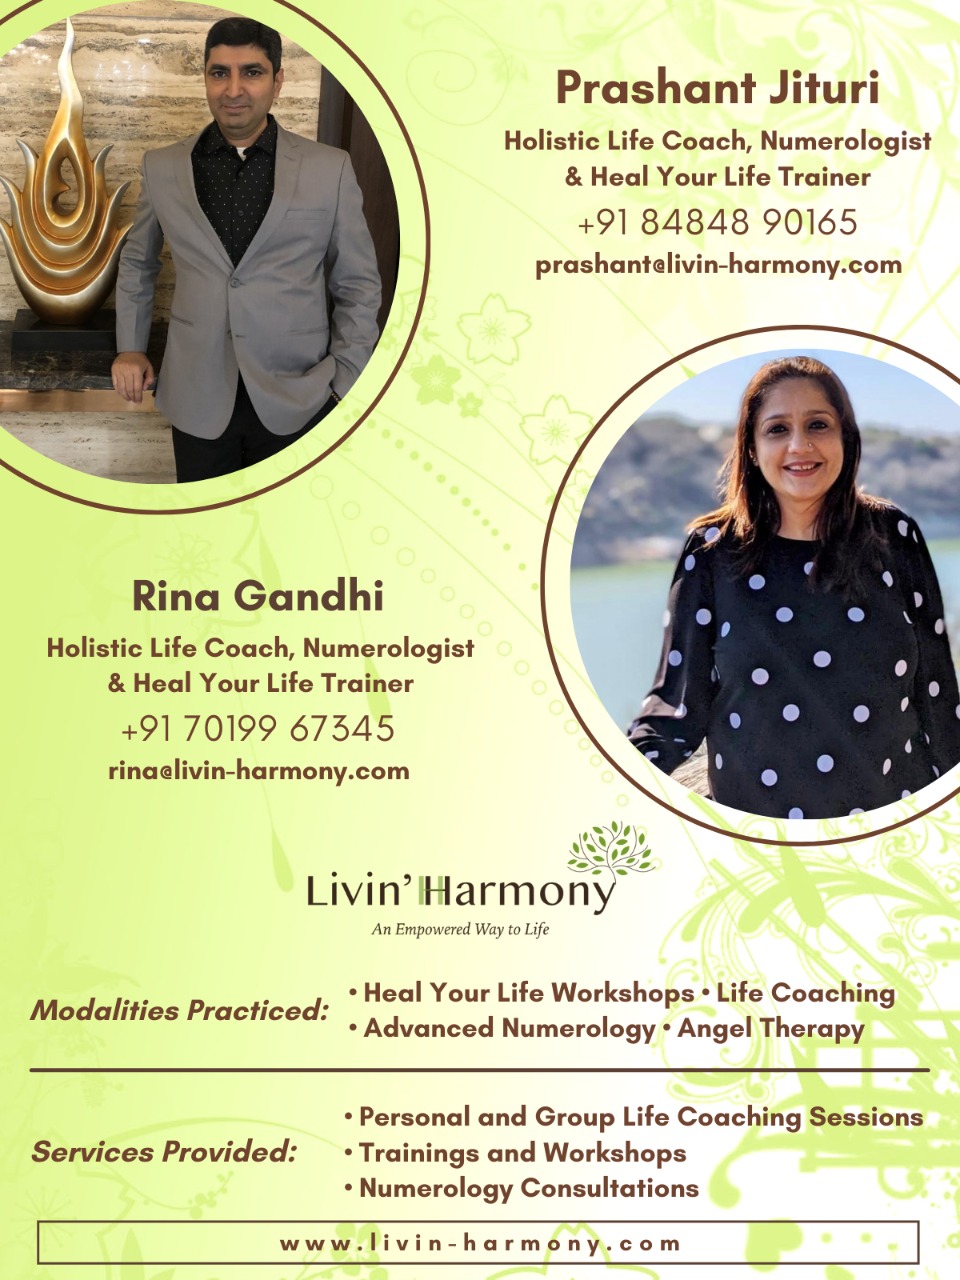 Life Coaching by Rina Gandhi and Prashant Jituri - Nizamabad